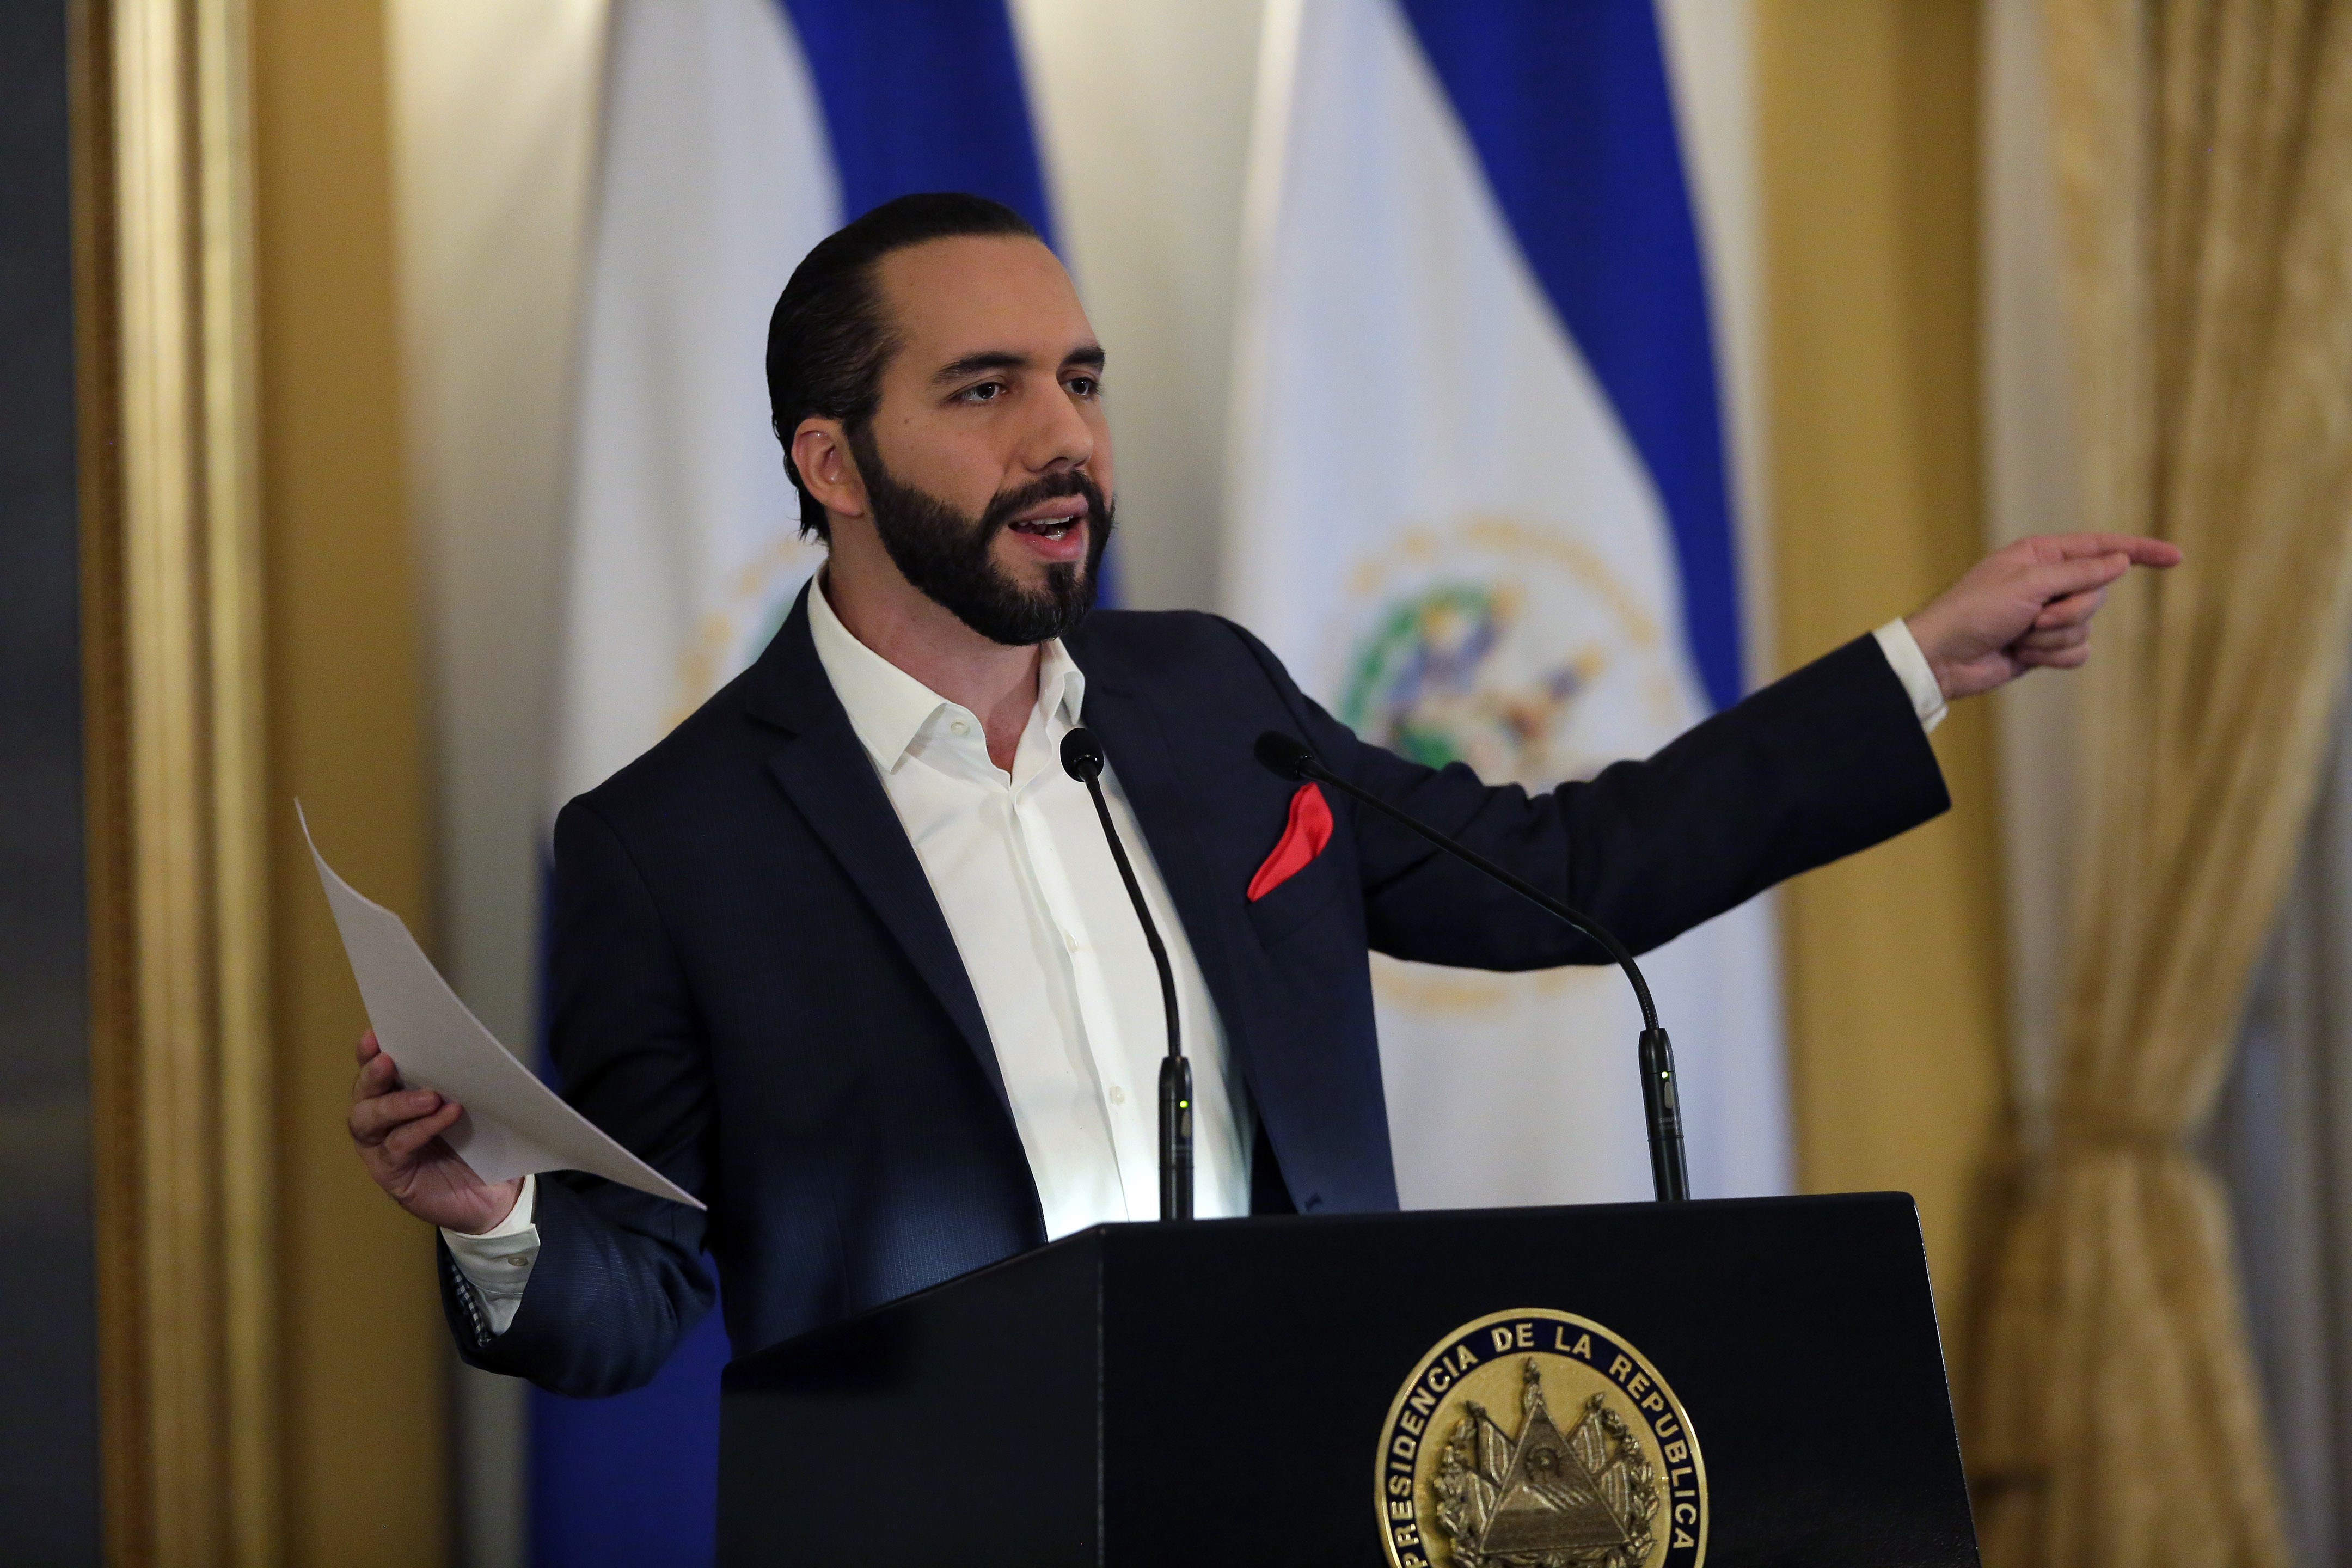 Cidh condenó destitución de magistrados en El Salvador sin el debido proceso